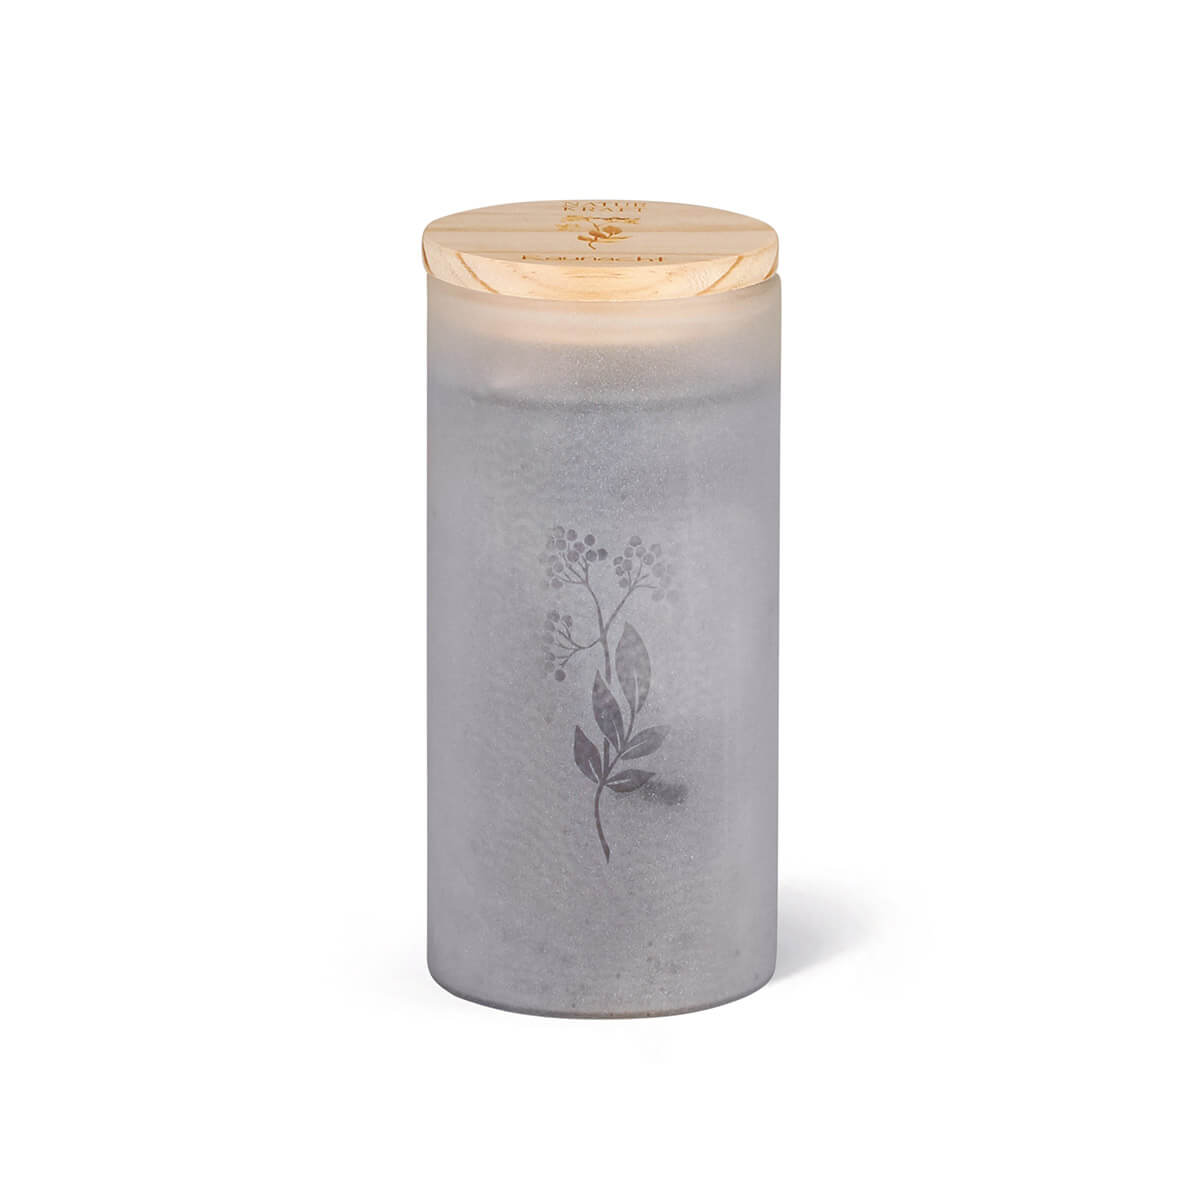 Berglicht – Olivenwachs-Stearin Kerze im Glas – Raunacht – vegan